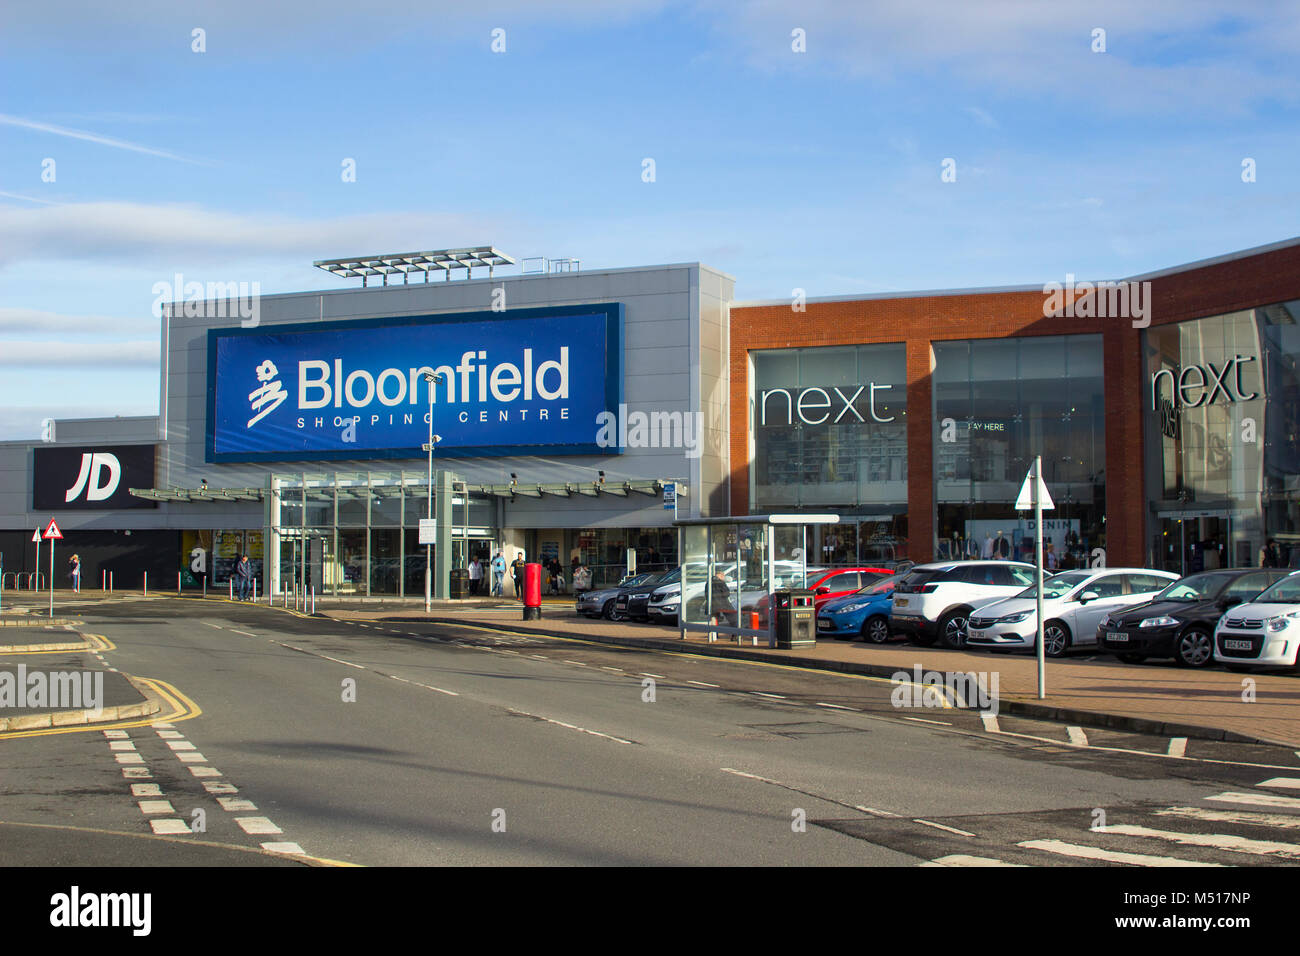 Magasin de détail divers fronts en Bloomfield moderne centre commercial de Bangor Northern Ireland sur une calme lundi après une semaine chargée Banque D'Images